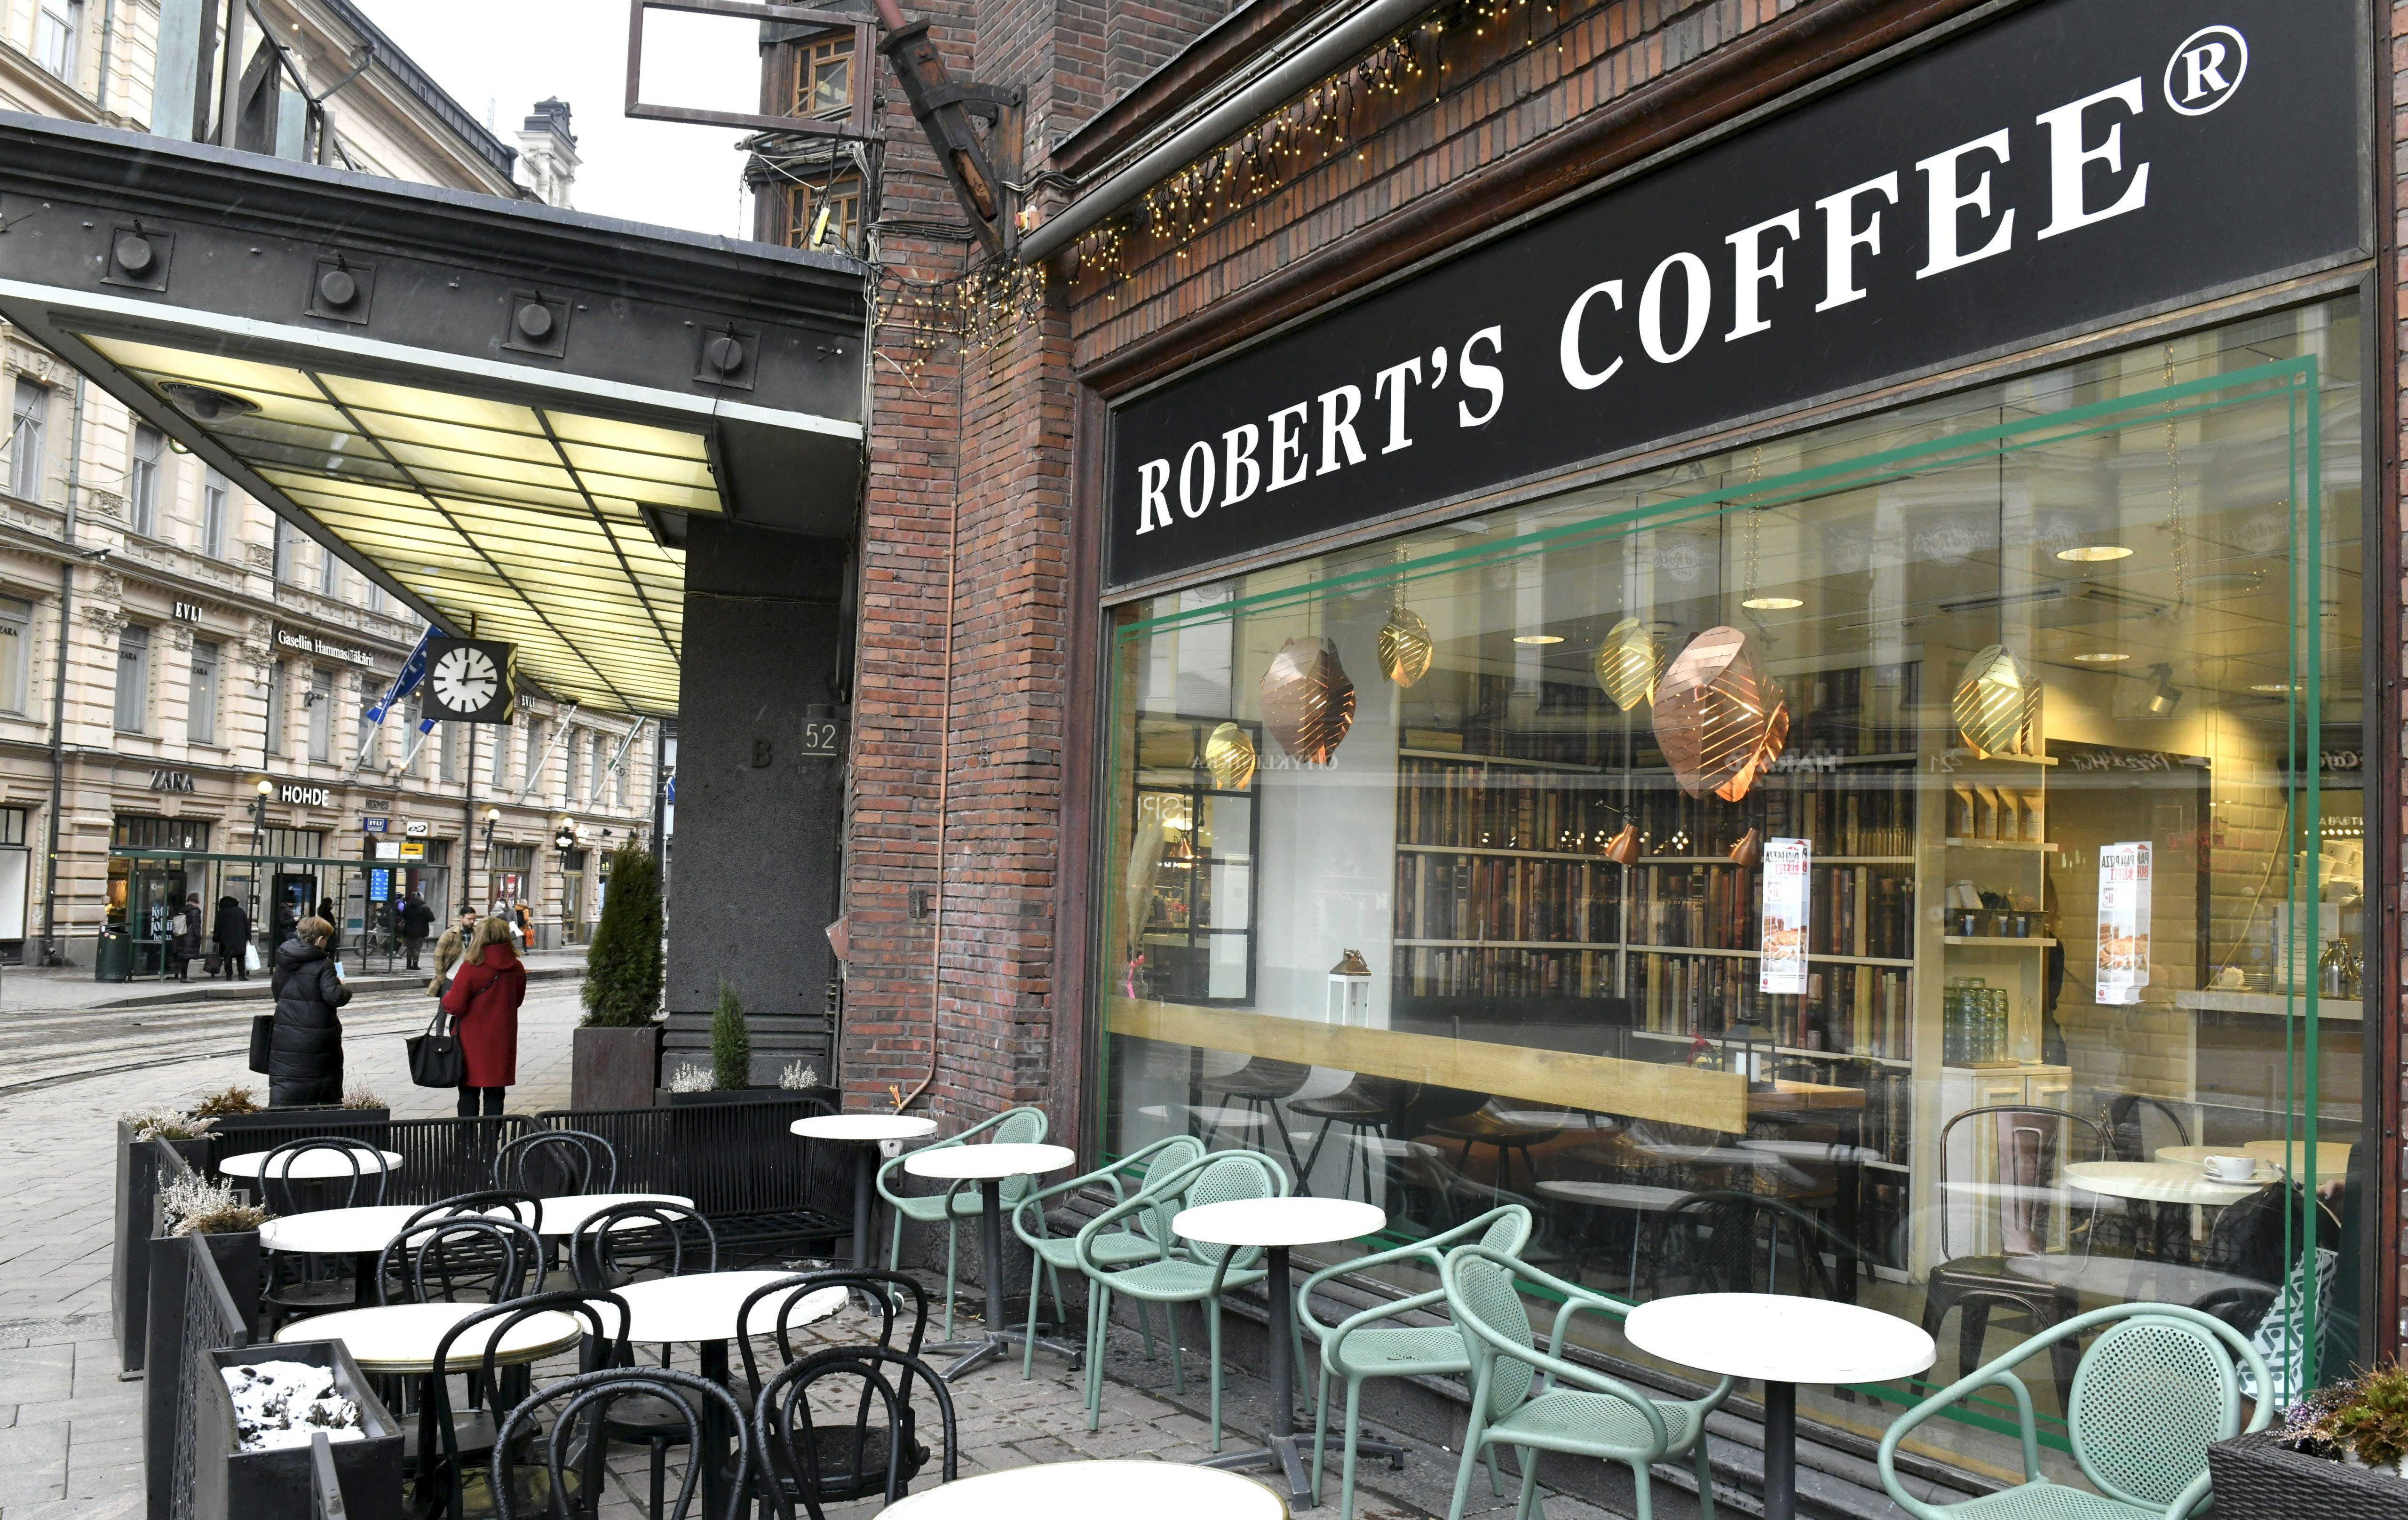 Mitarbeiter von Robert's Coffee House in Helsinki beanspruchen lange Tage ohne Pausen